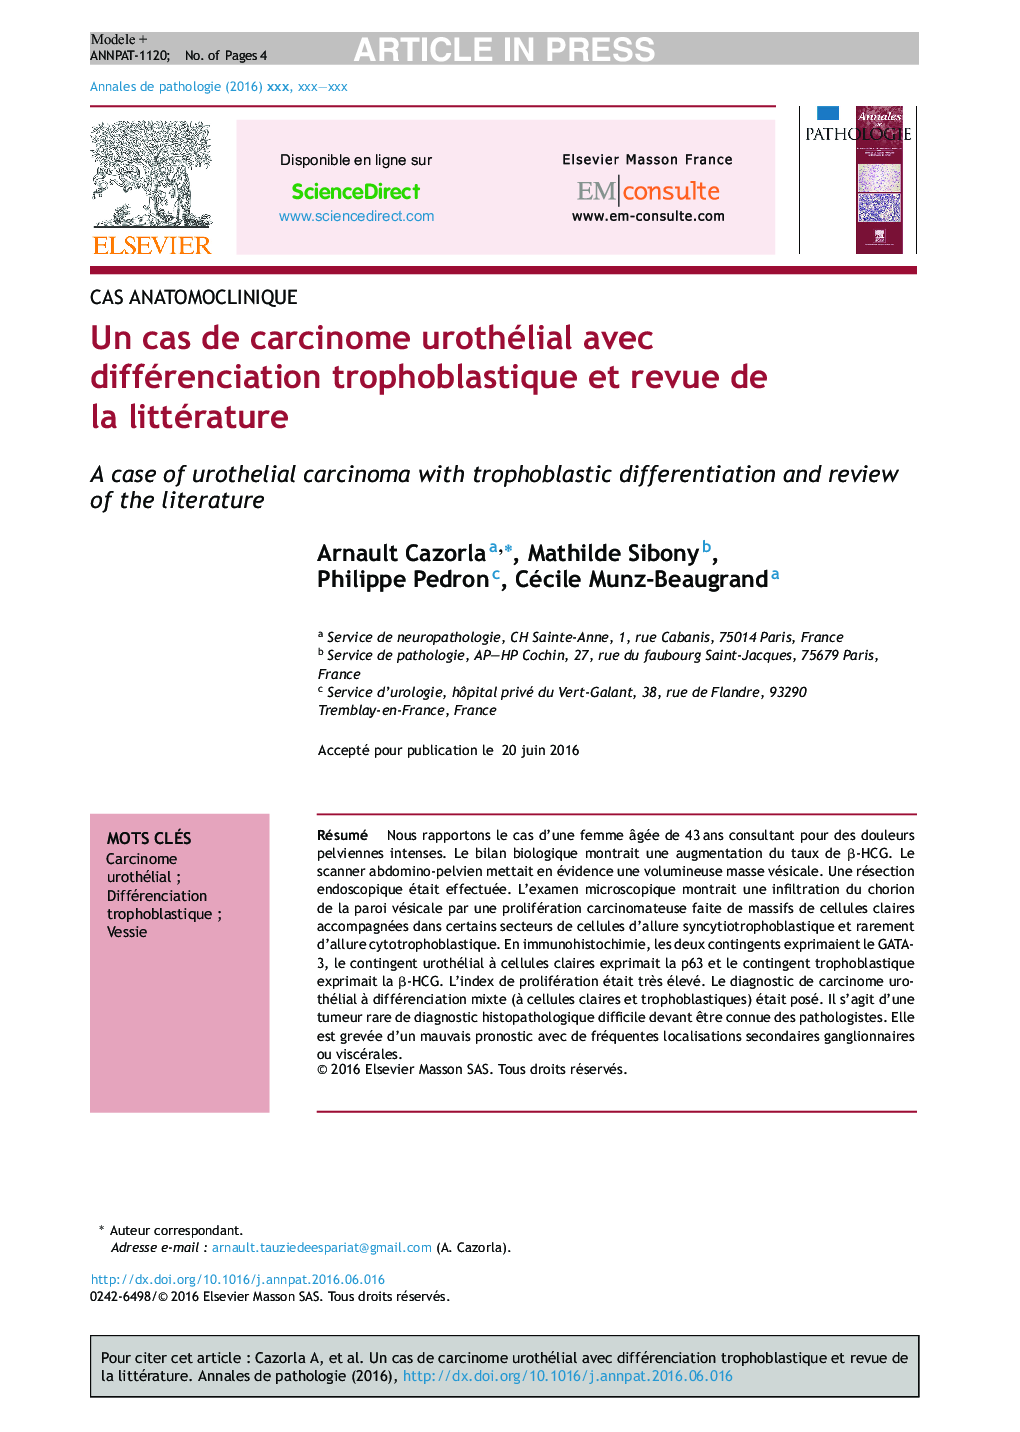 Un cas de carcinome urothélial avec différenciation trophoblastique et revue de la littérature